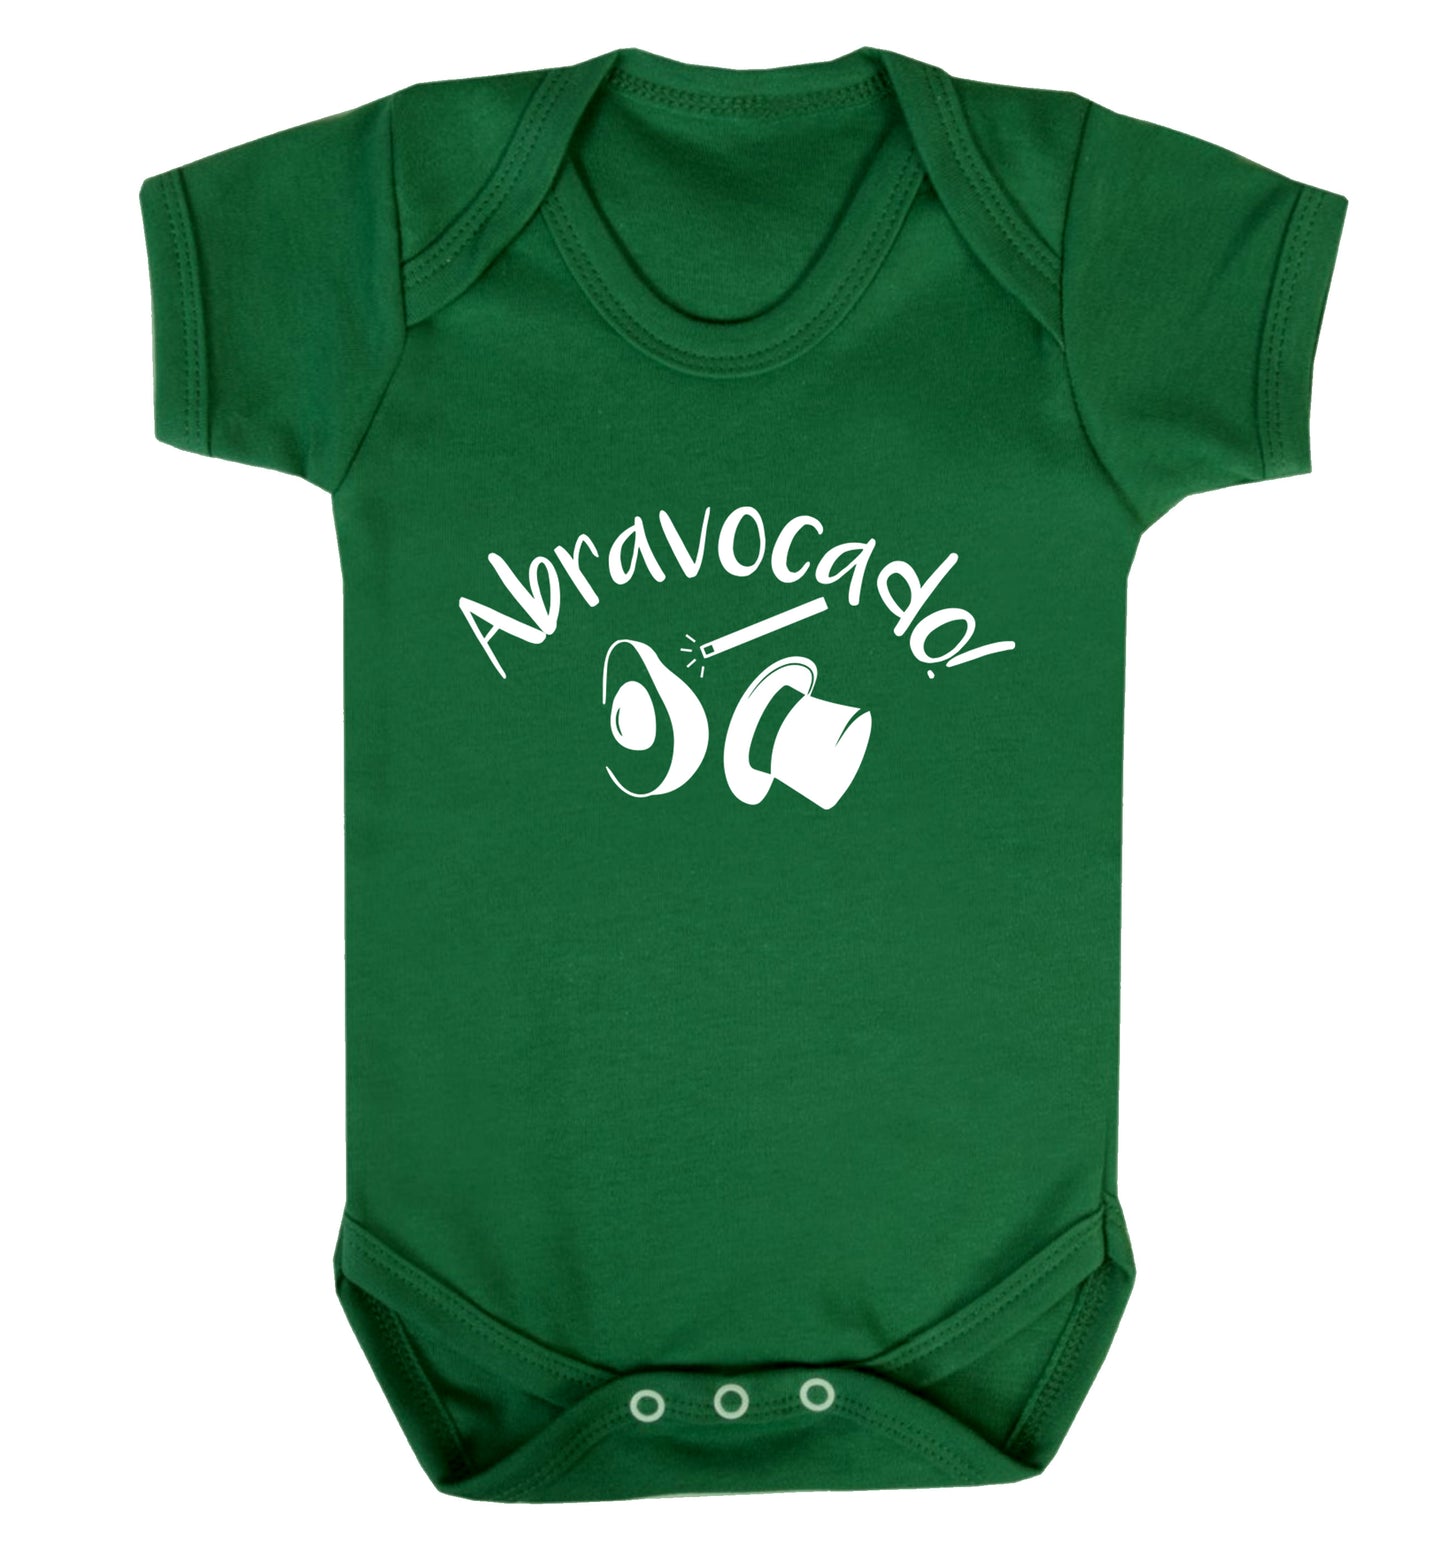 Abravocado Baby Vest green 18-24 months